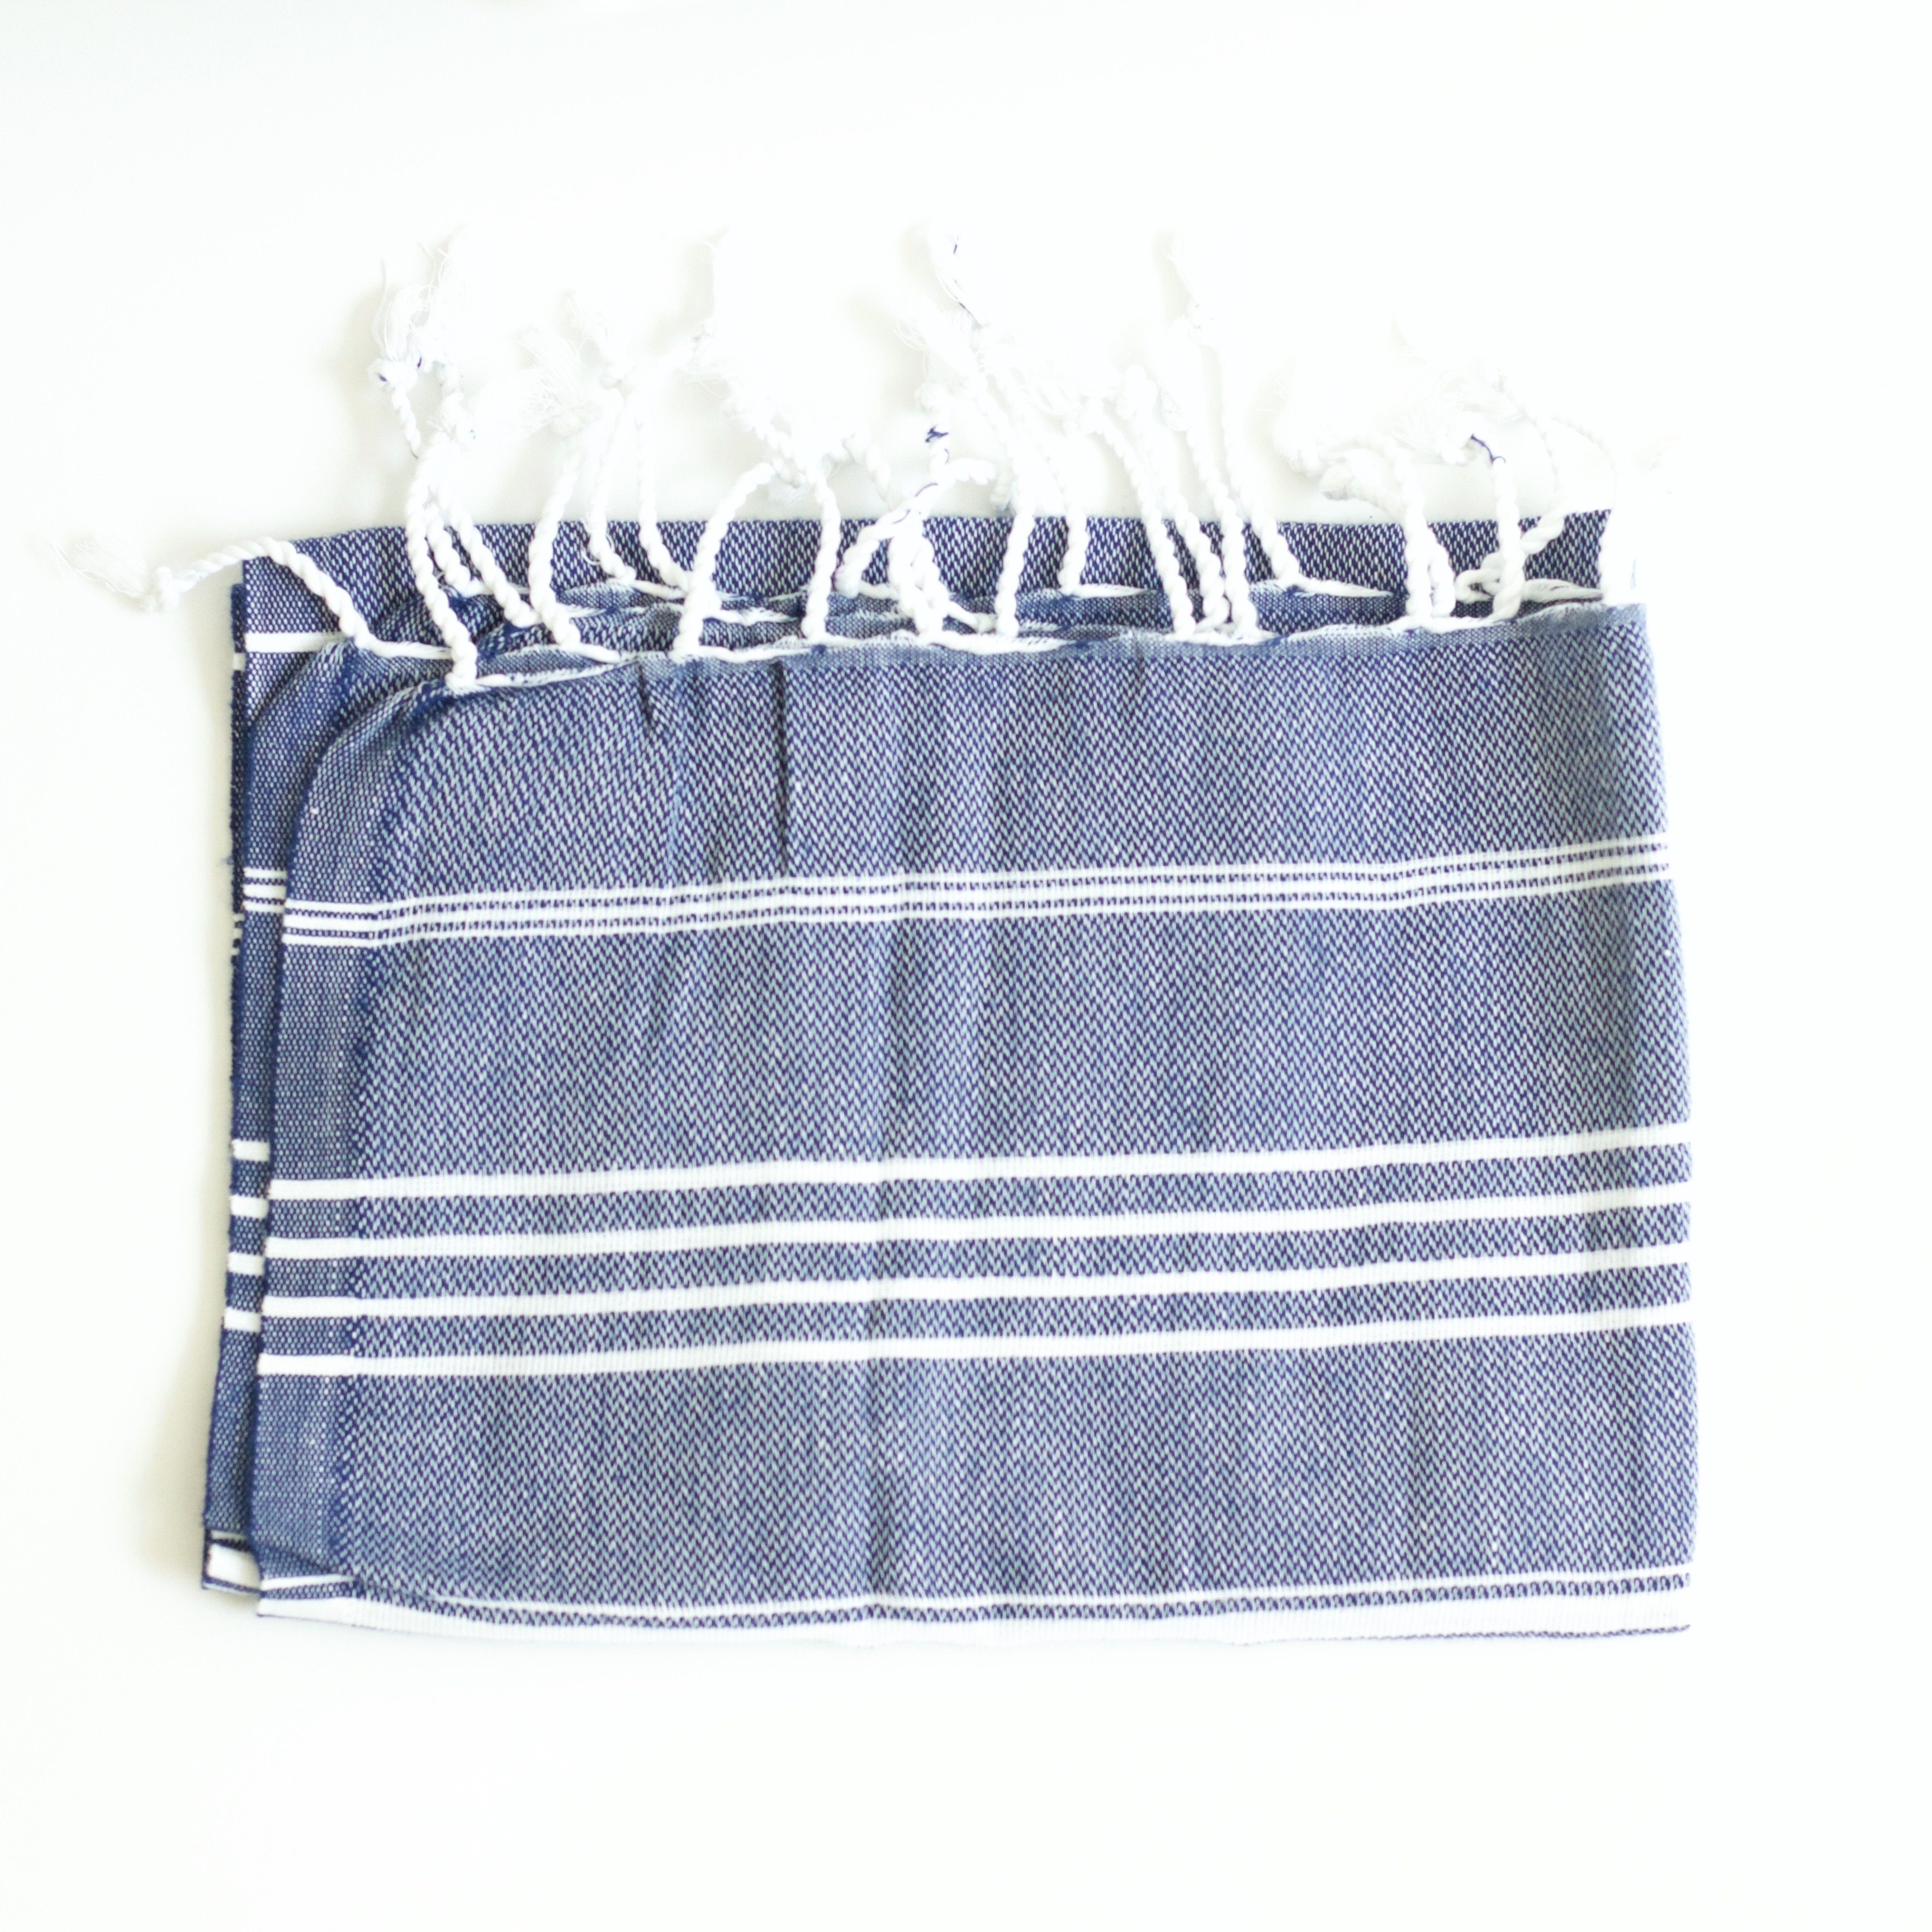 fair-trade-cotton-towel